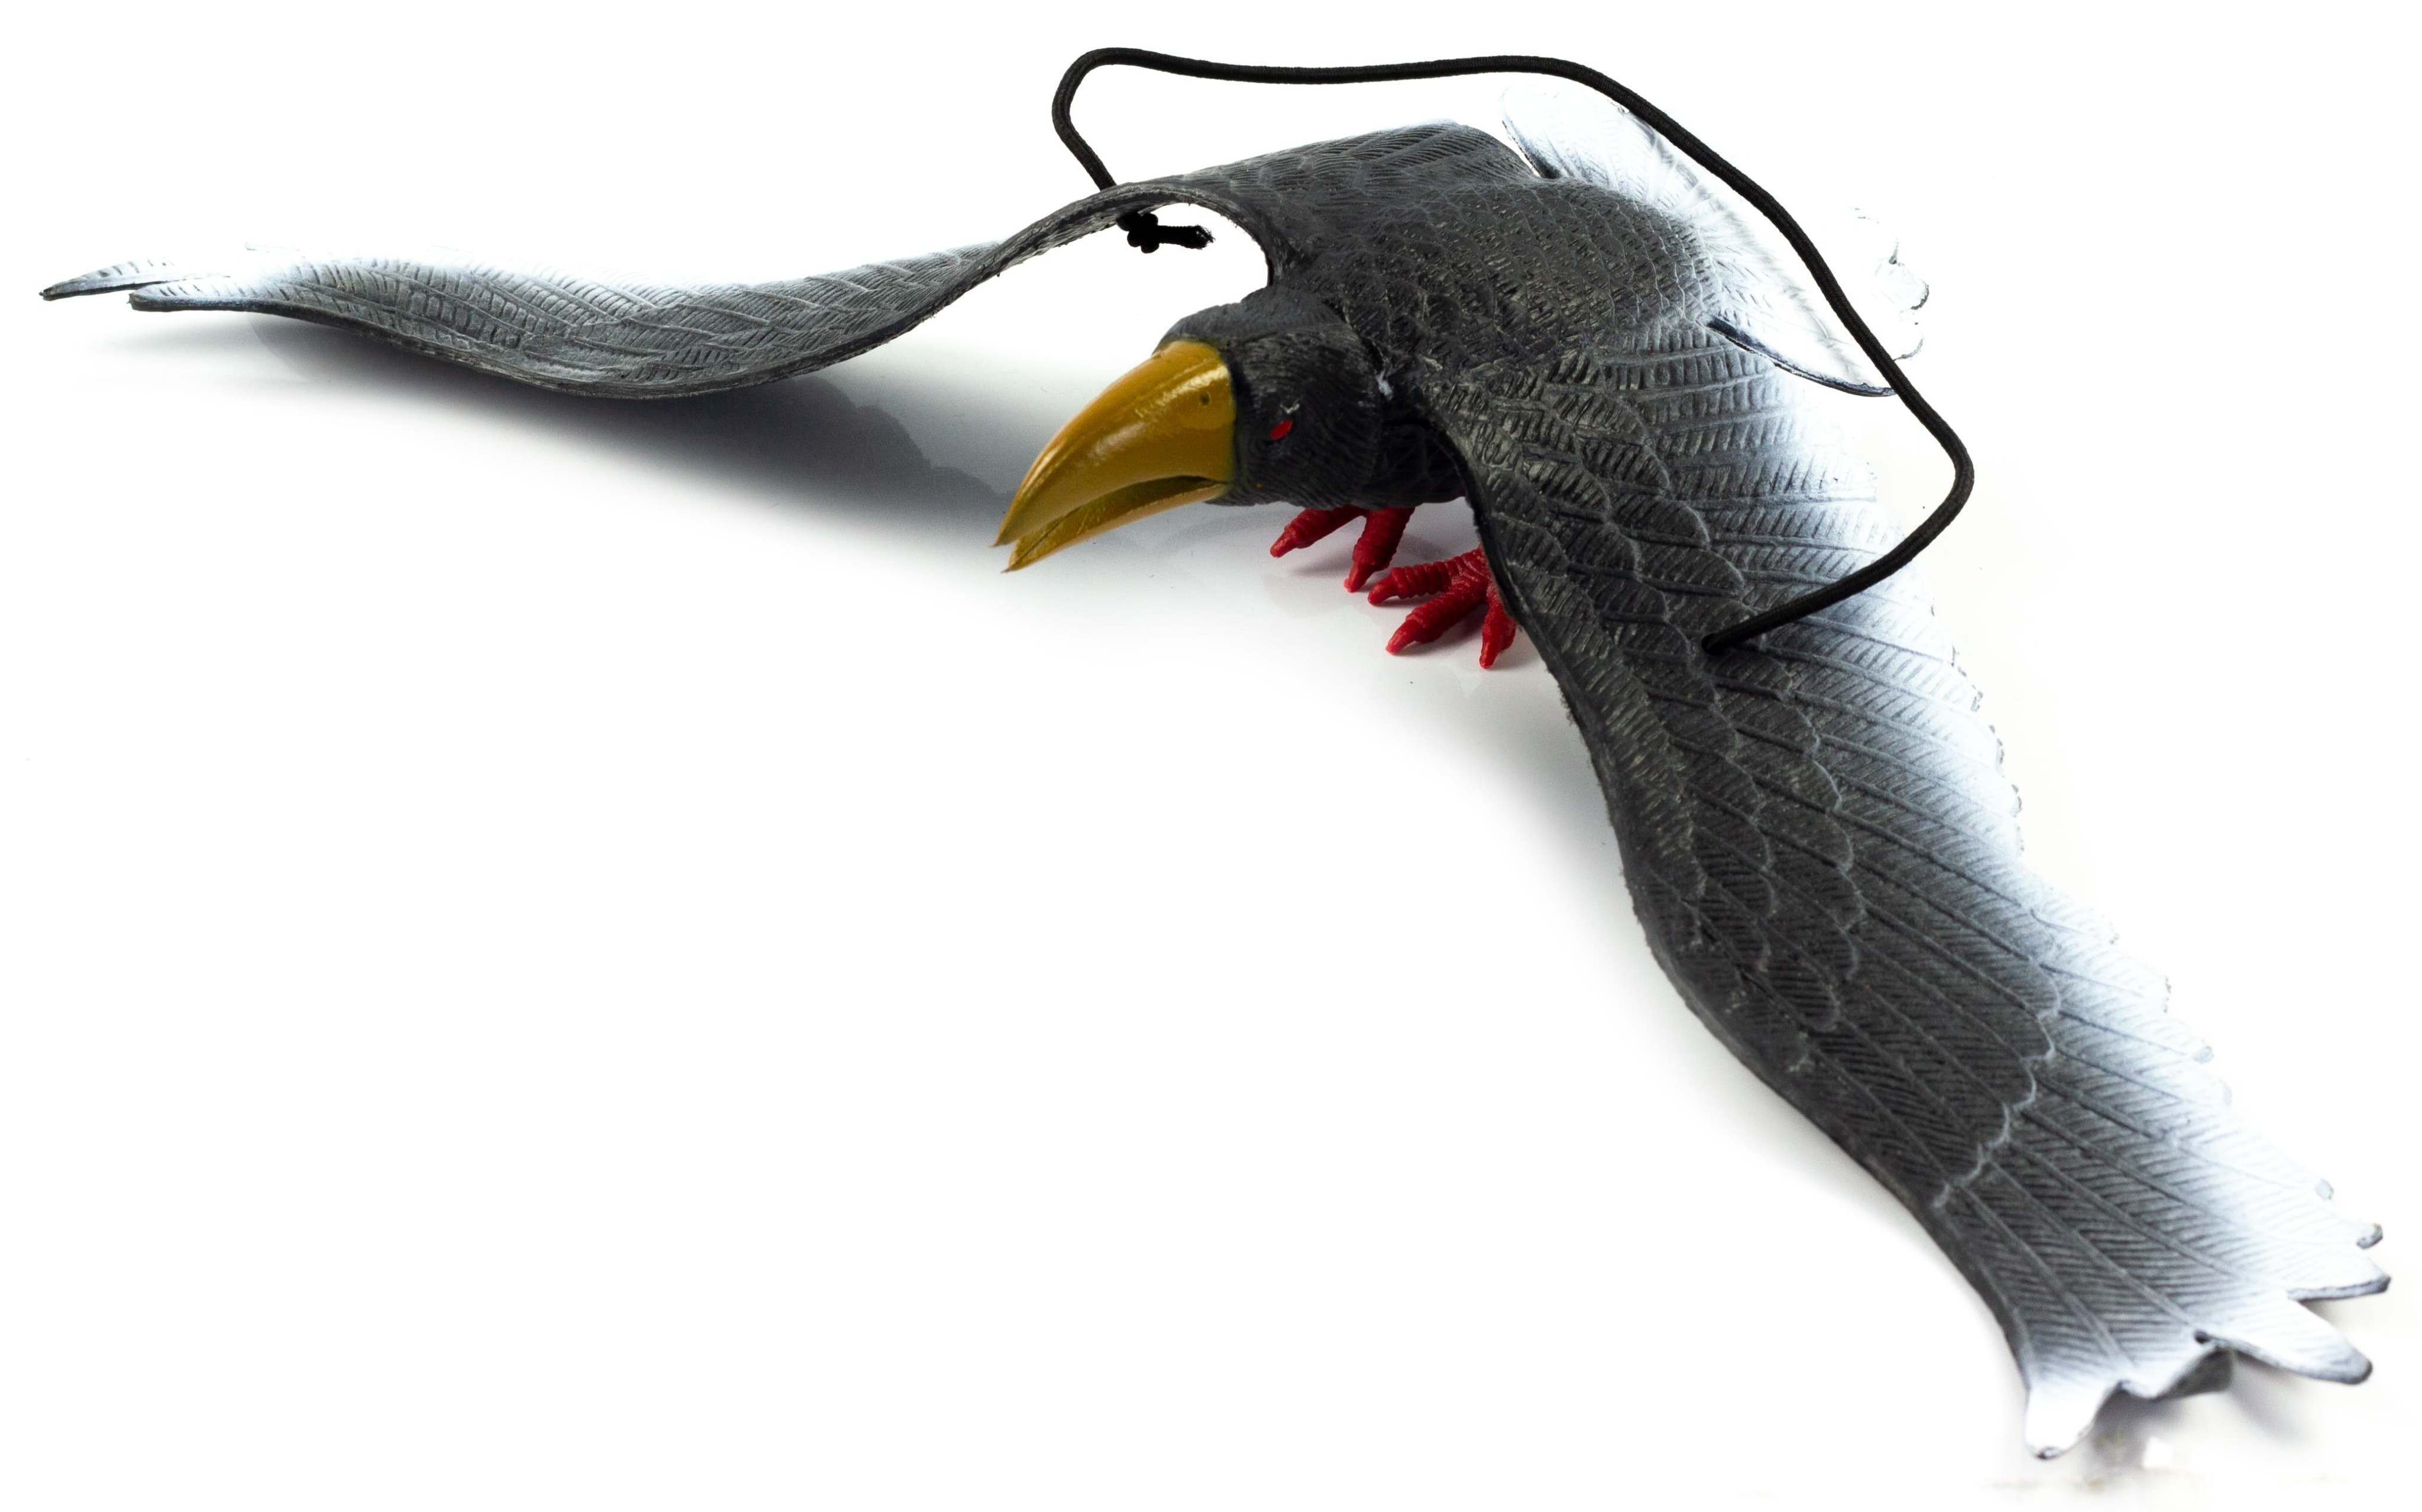 Резиновые игрушки «Птицы на резинках с пищалкой» 33 см., Н100-2W / Ворона